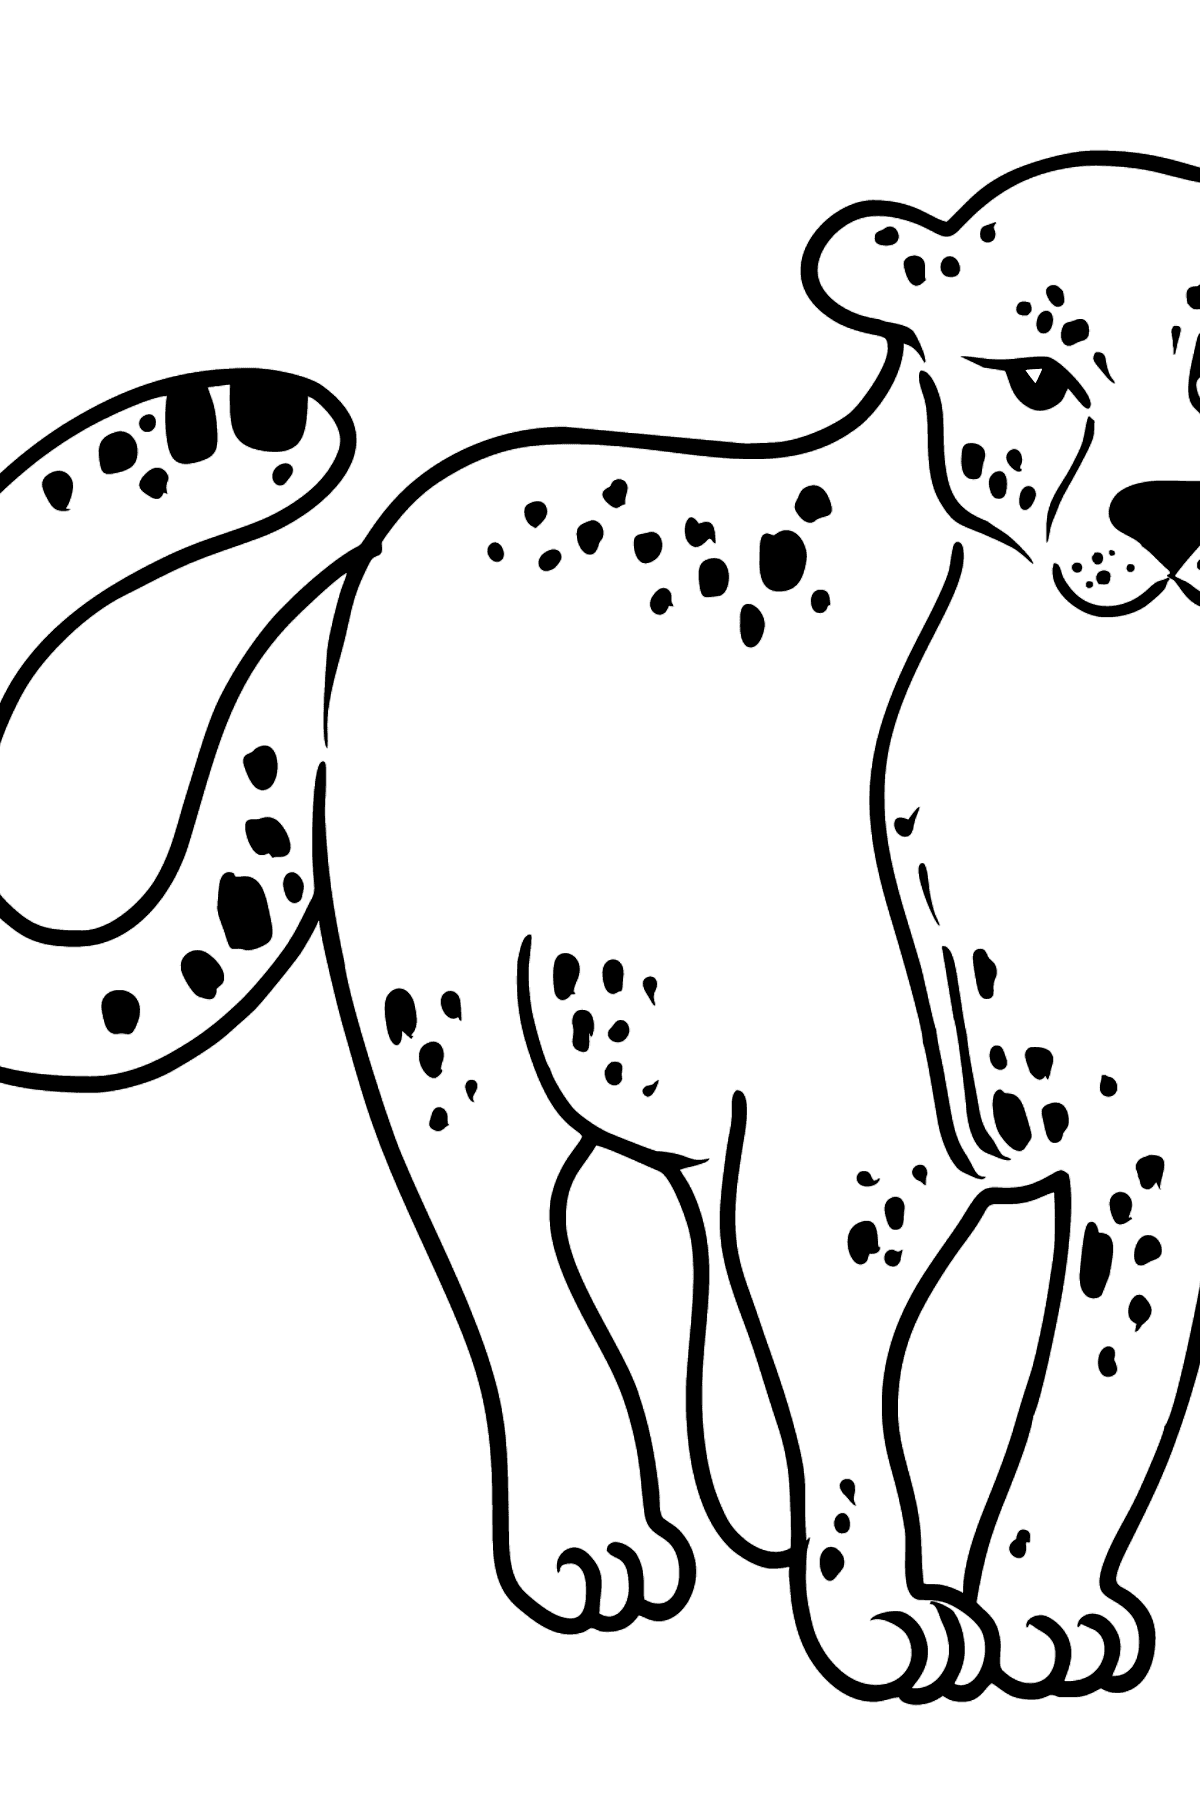 Kleurplaat luipaard - kleurplaten voor kinderen